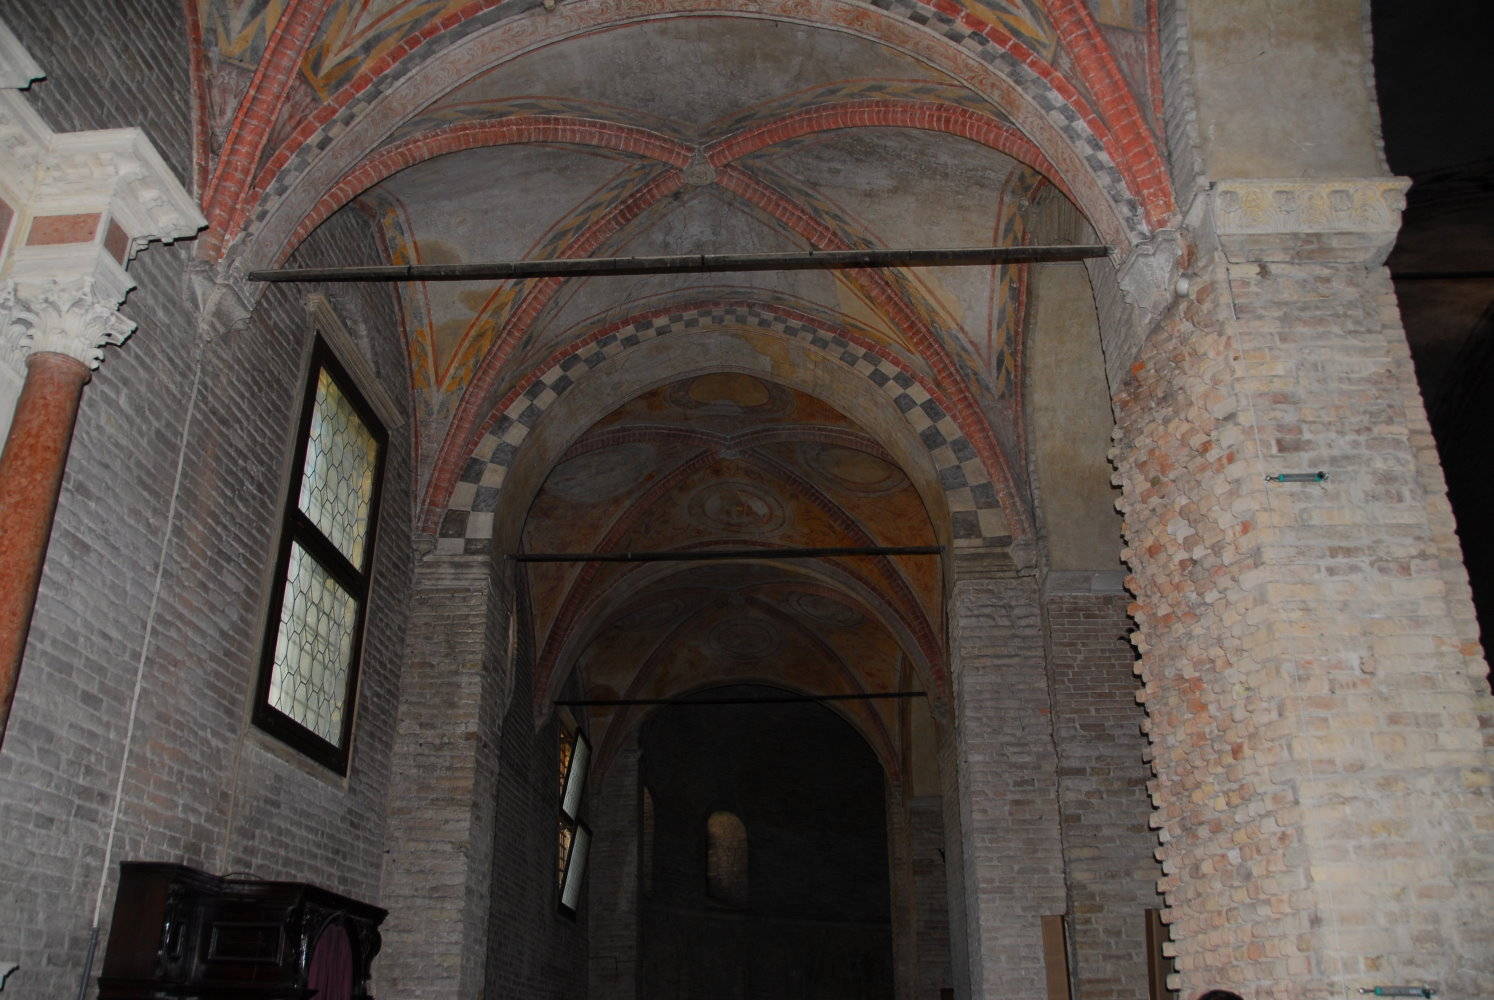 An old church in Padova (Padua)